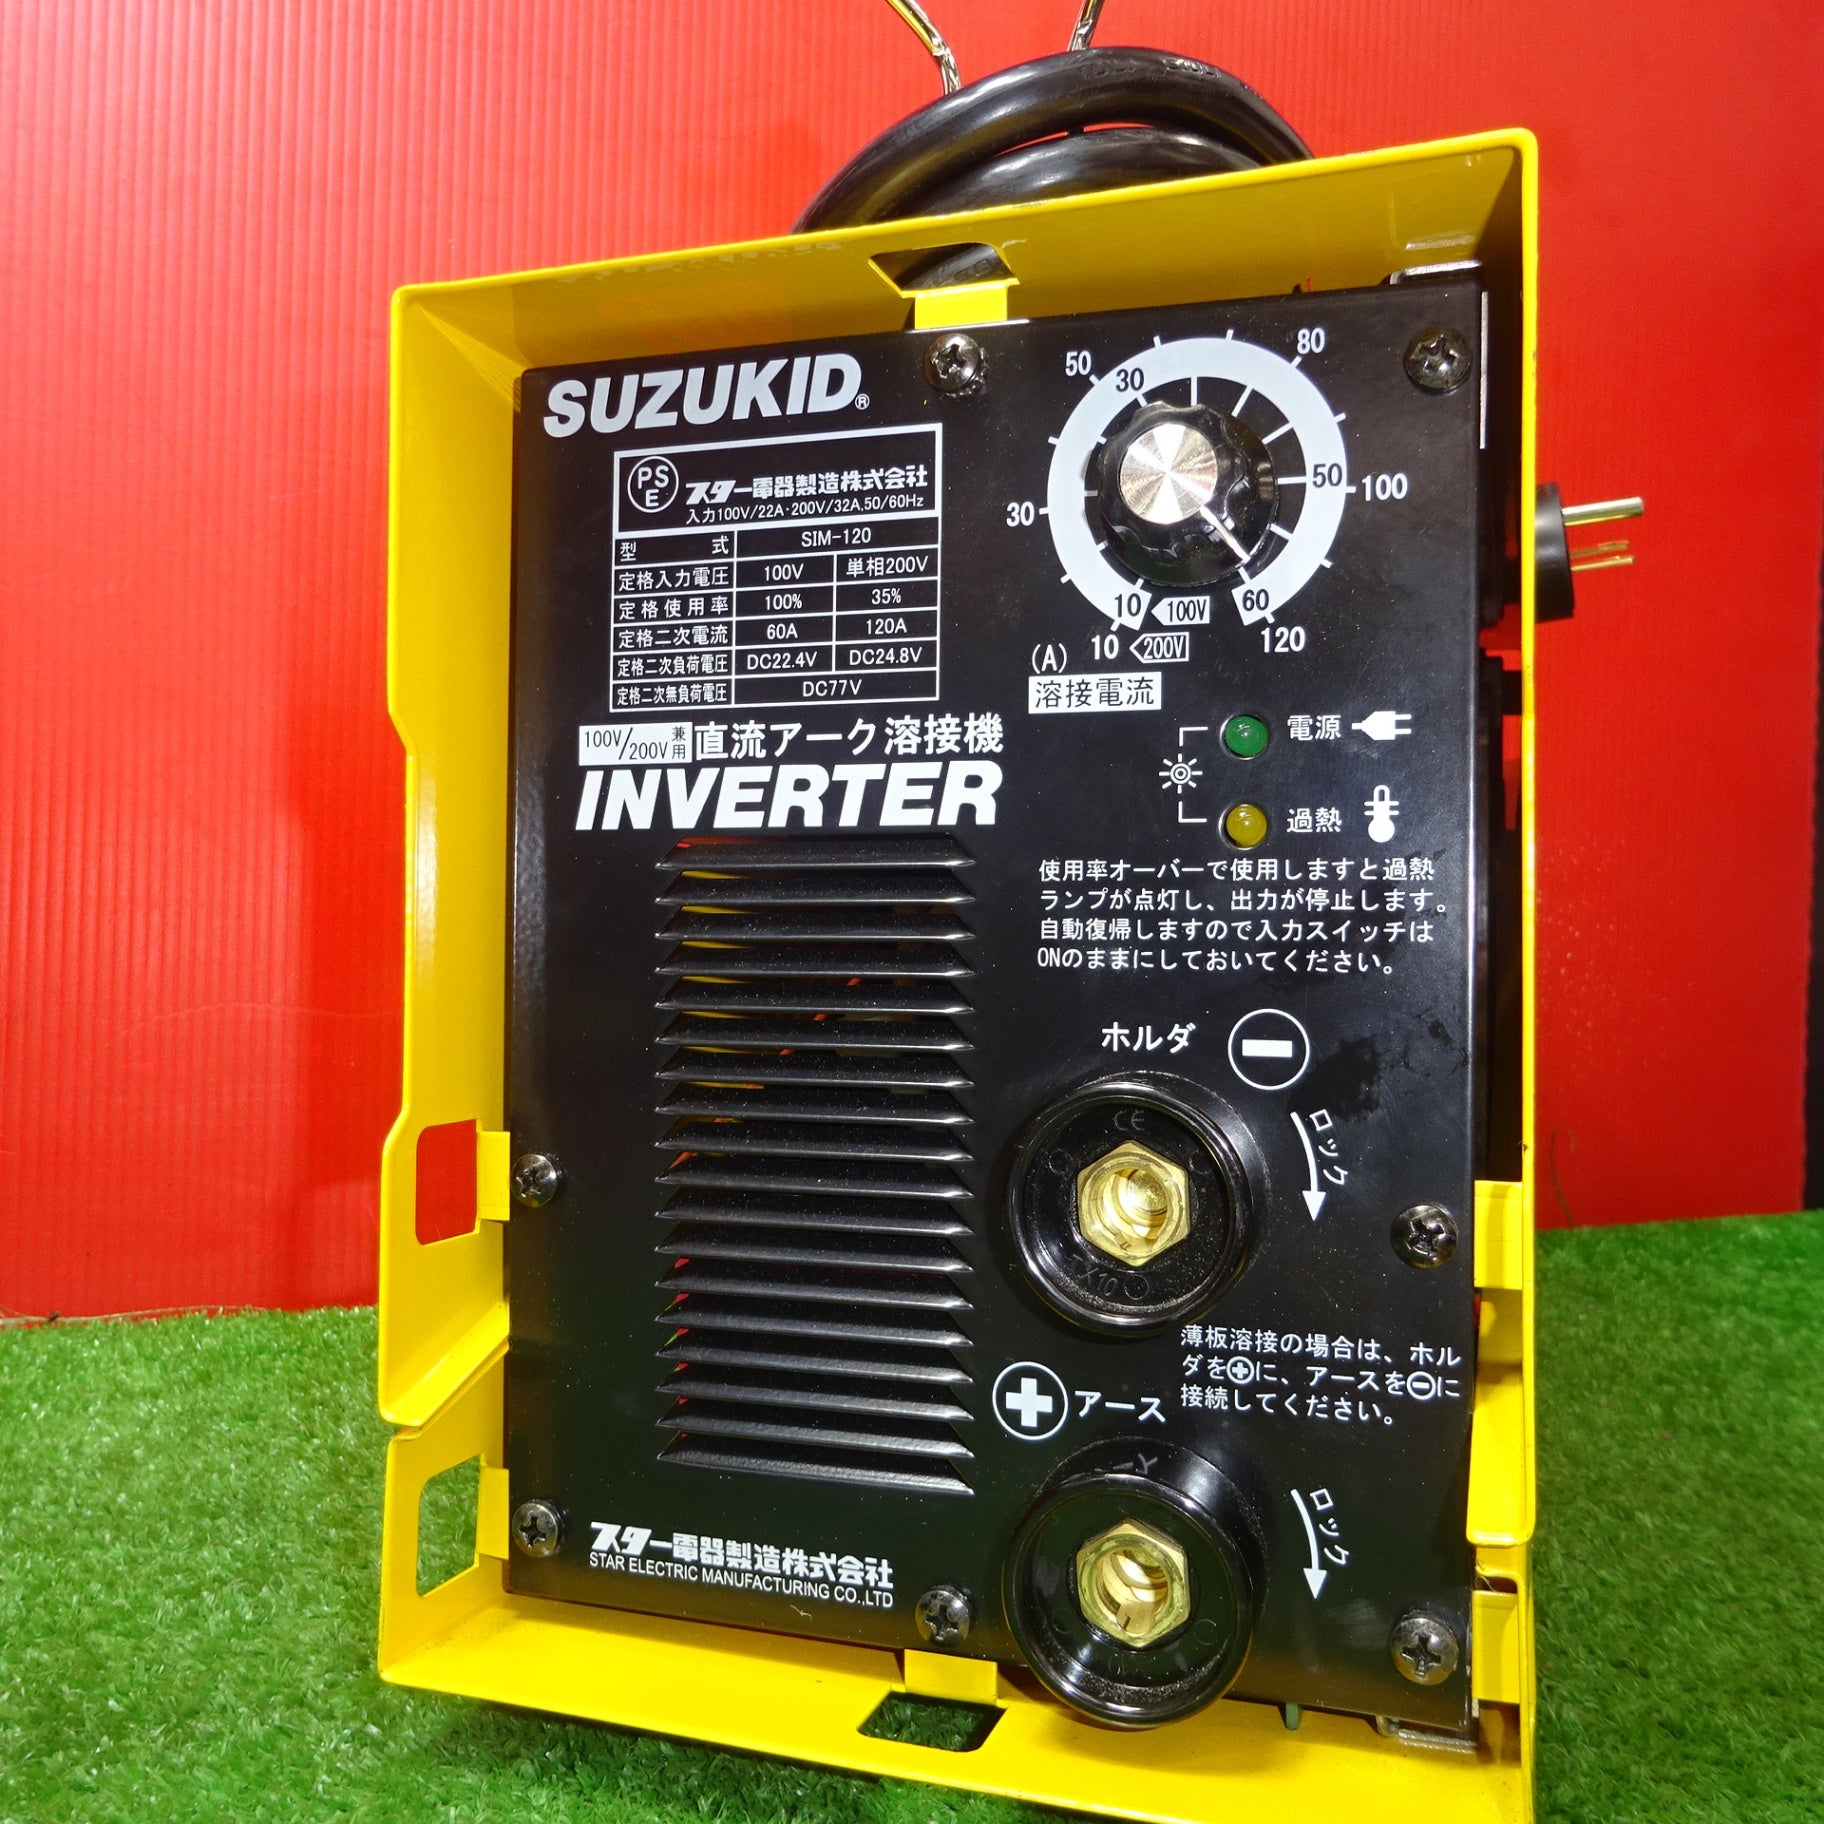 スズキッド アイマックス120 lmax SUZUKID 溶接機 - 工具/メンテナンス